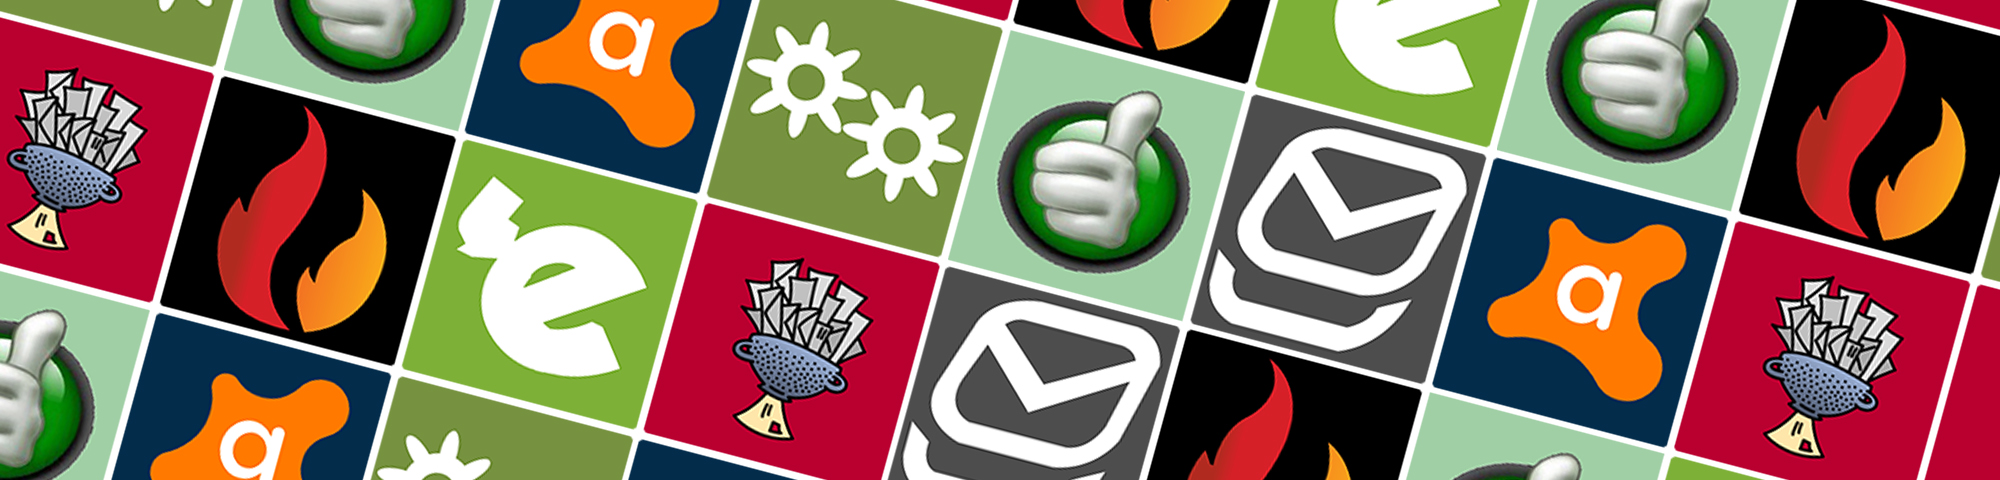 Best E Mail Spam Filter Top Ten Reviews